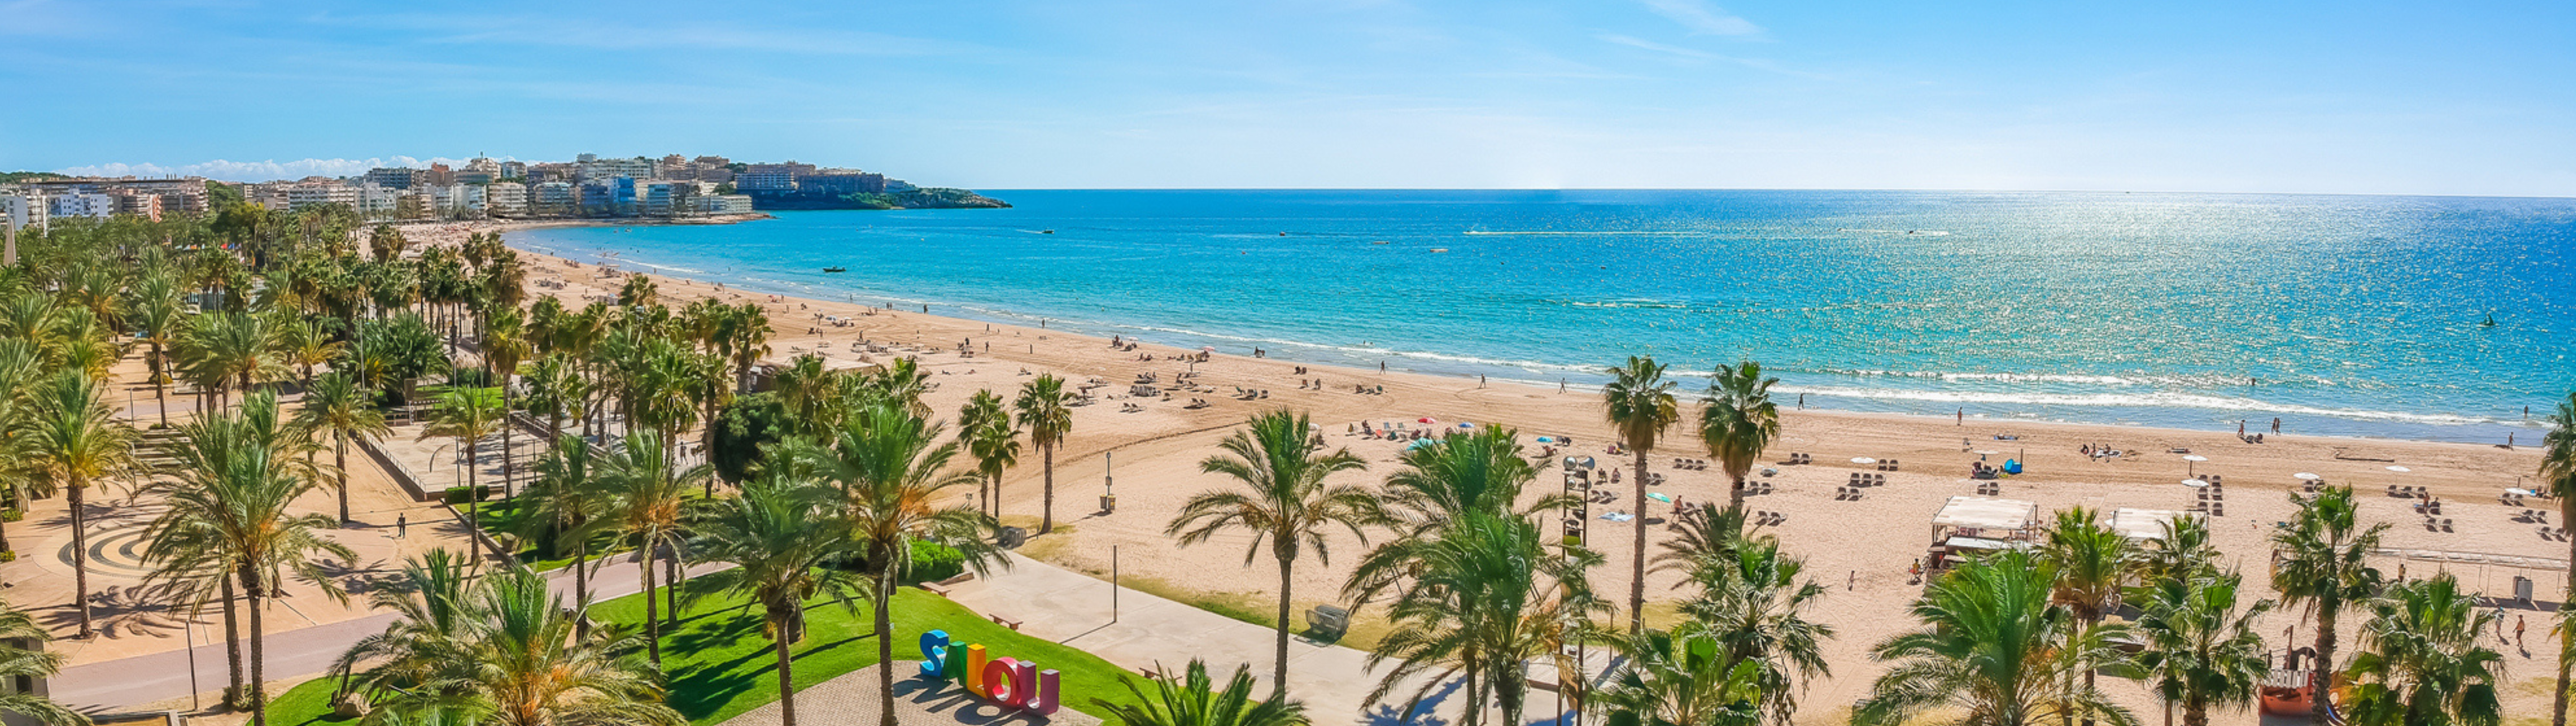 Vacances en Espagne à petit prix